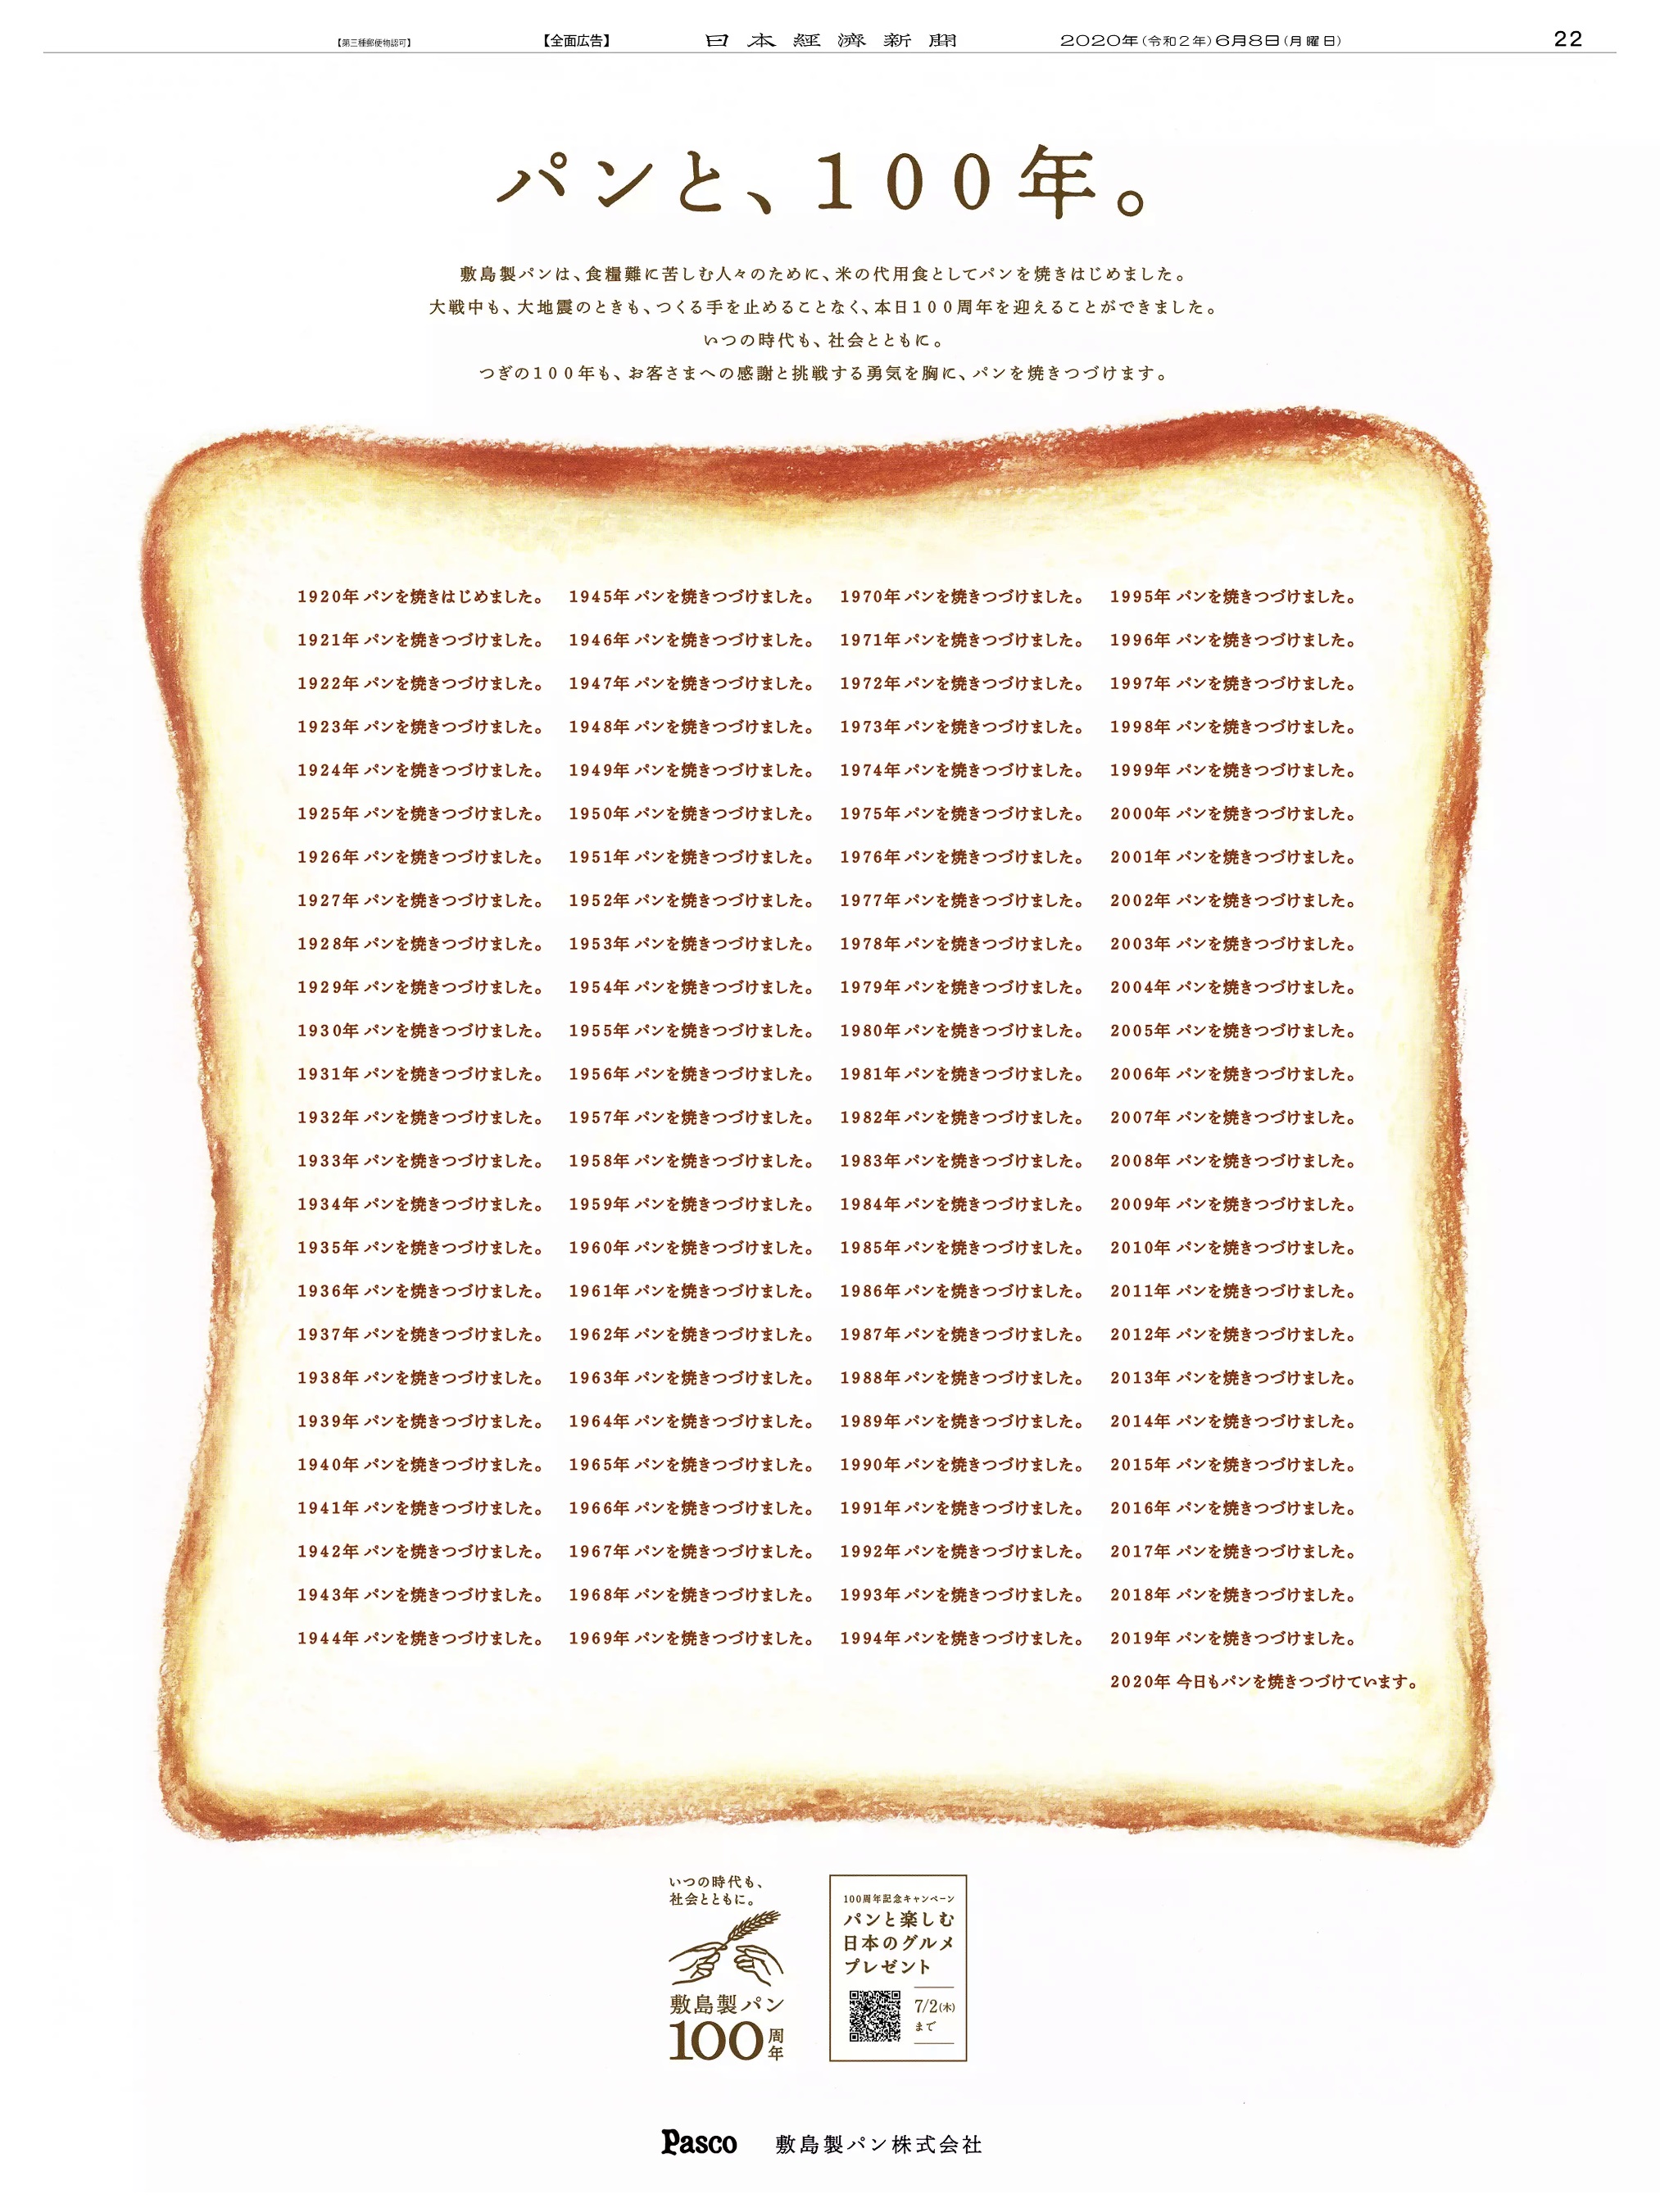 周年記念広告事例 「敷島製パン 創業100周年」